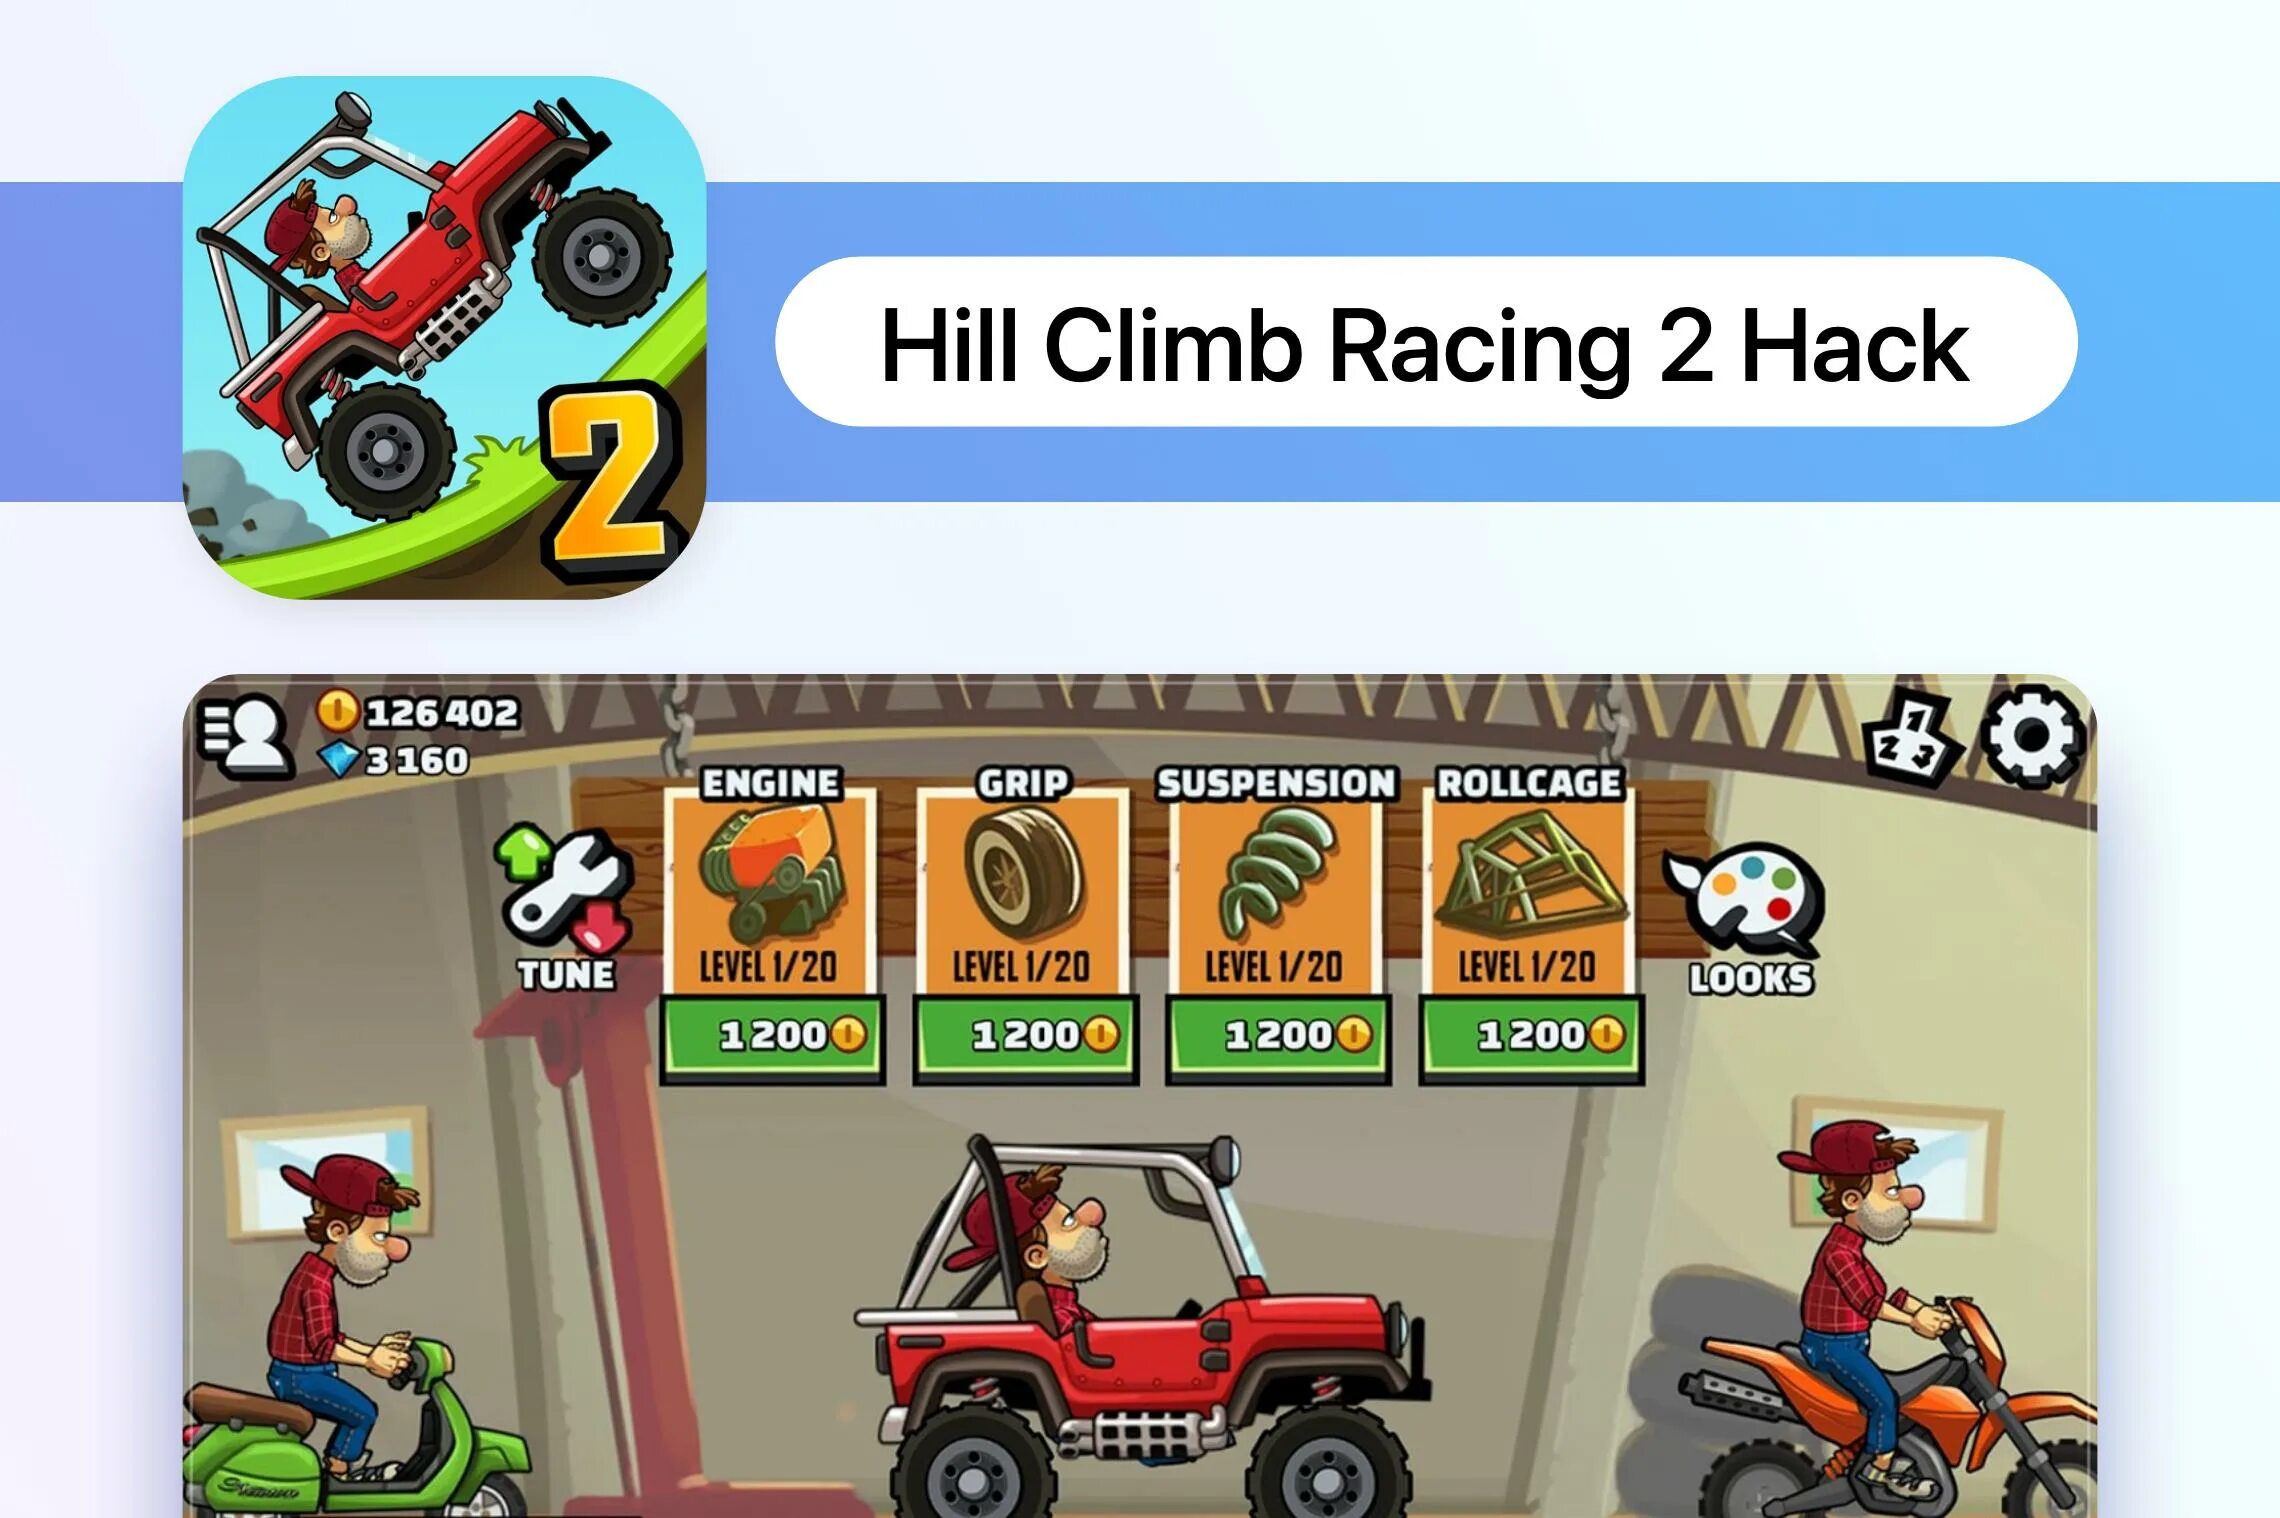 Хилл климб рейсинг в злом. Китайская версия Hill Climb Racing 2. Хилл климб рейсинг 1. Хилл климб рейсинг 2 обновление. Хилл климб рейсинг 2 1 версия.